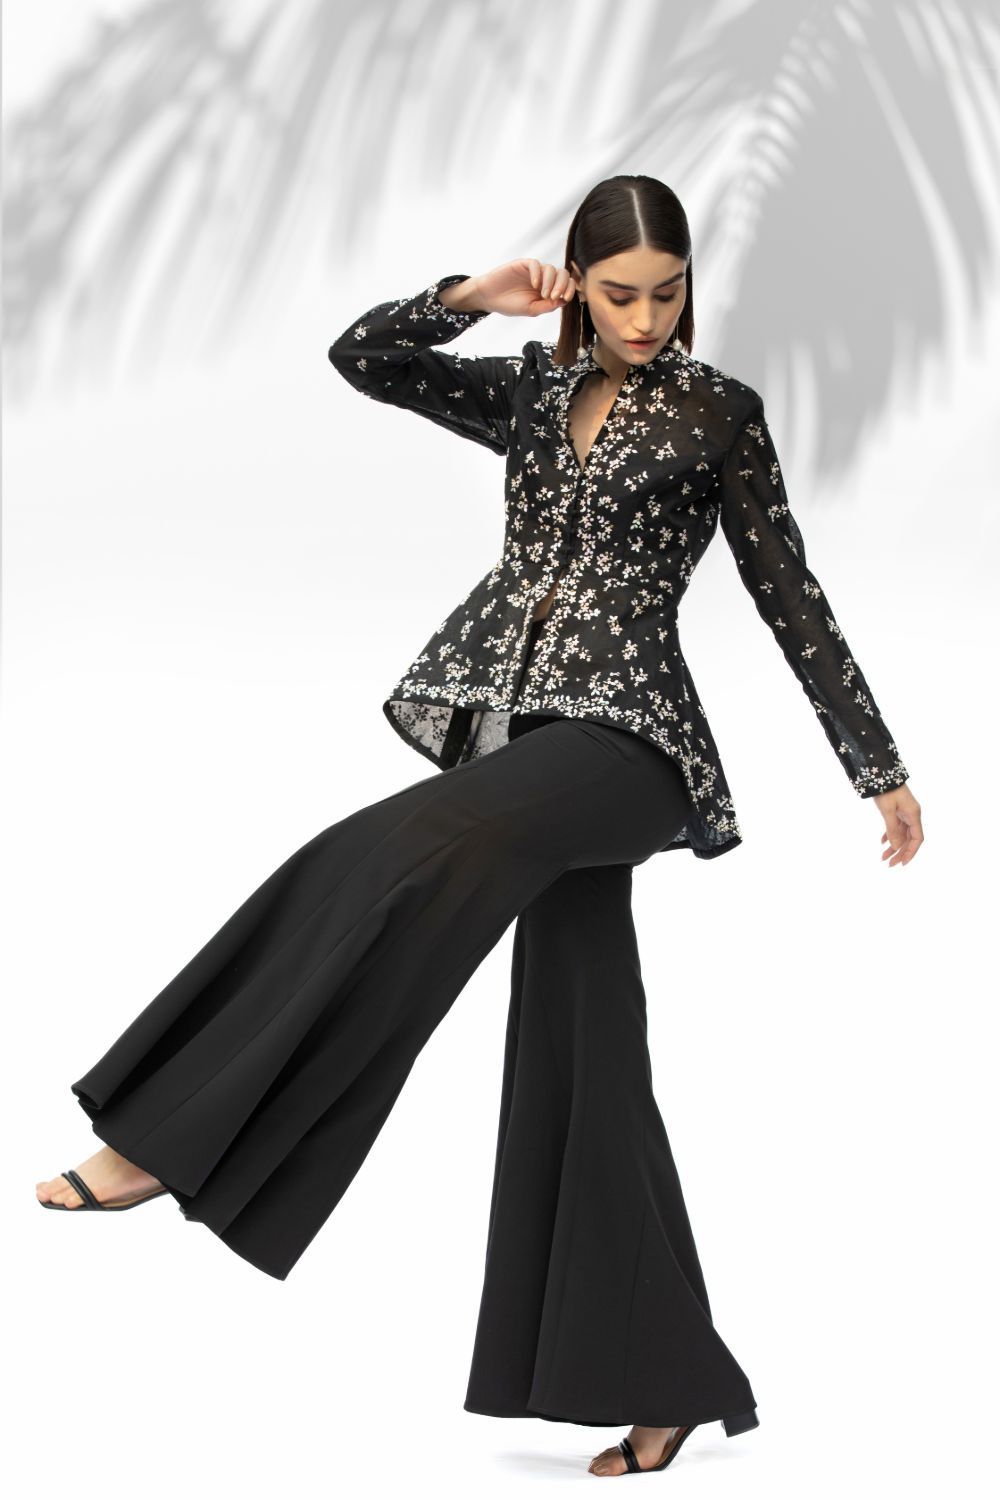 Dior Bella - Black Cutout Back Pants Suit – DIOR BELLA | Woman suit  fashion, Fashion outfits, Formal pant suits